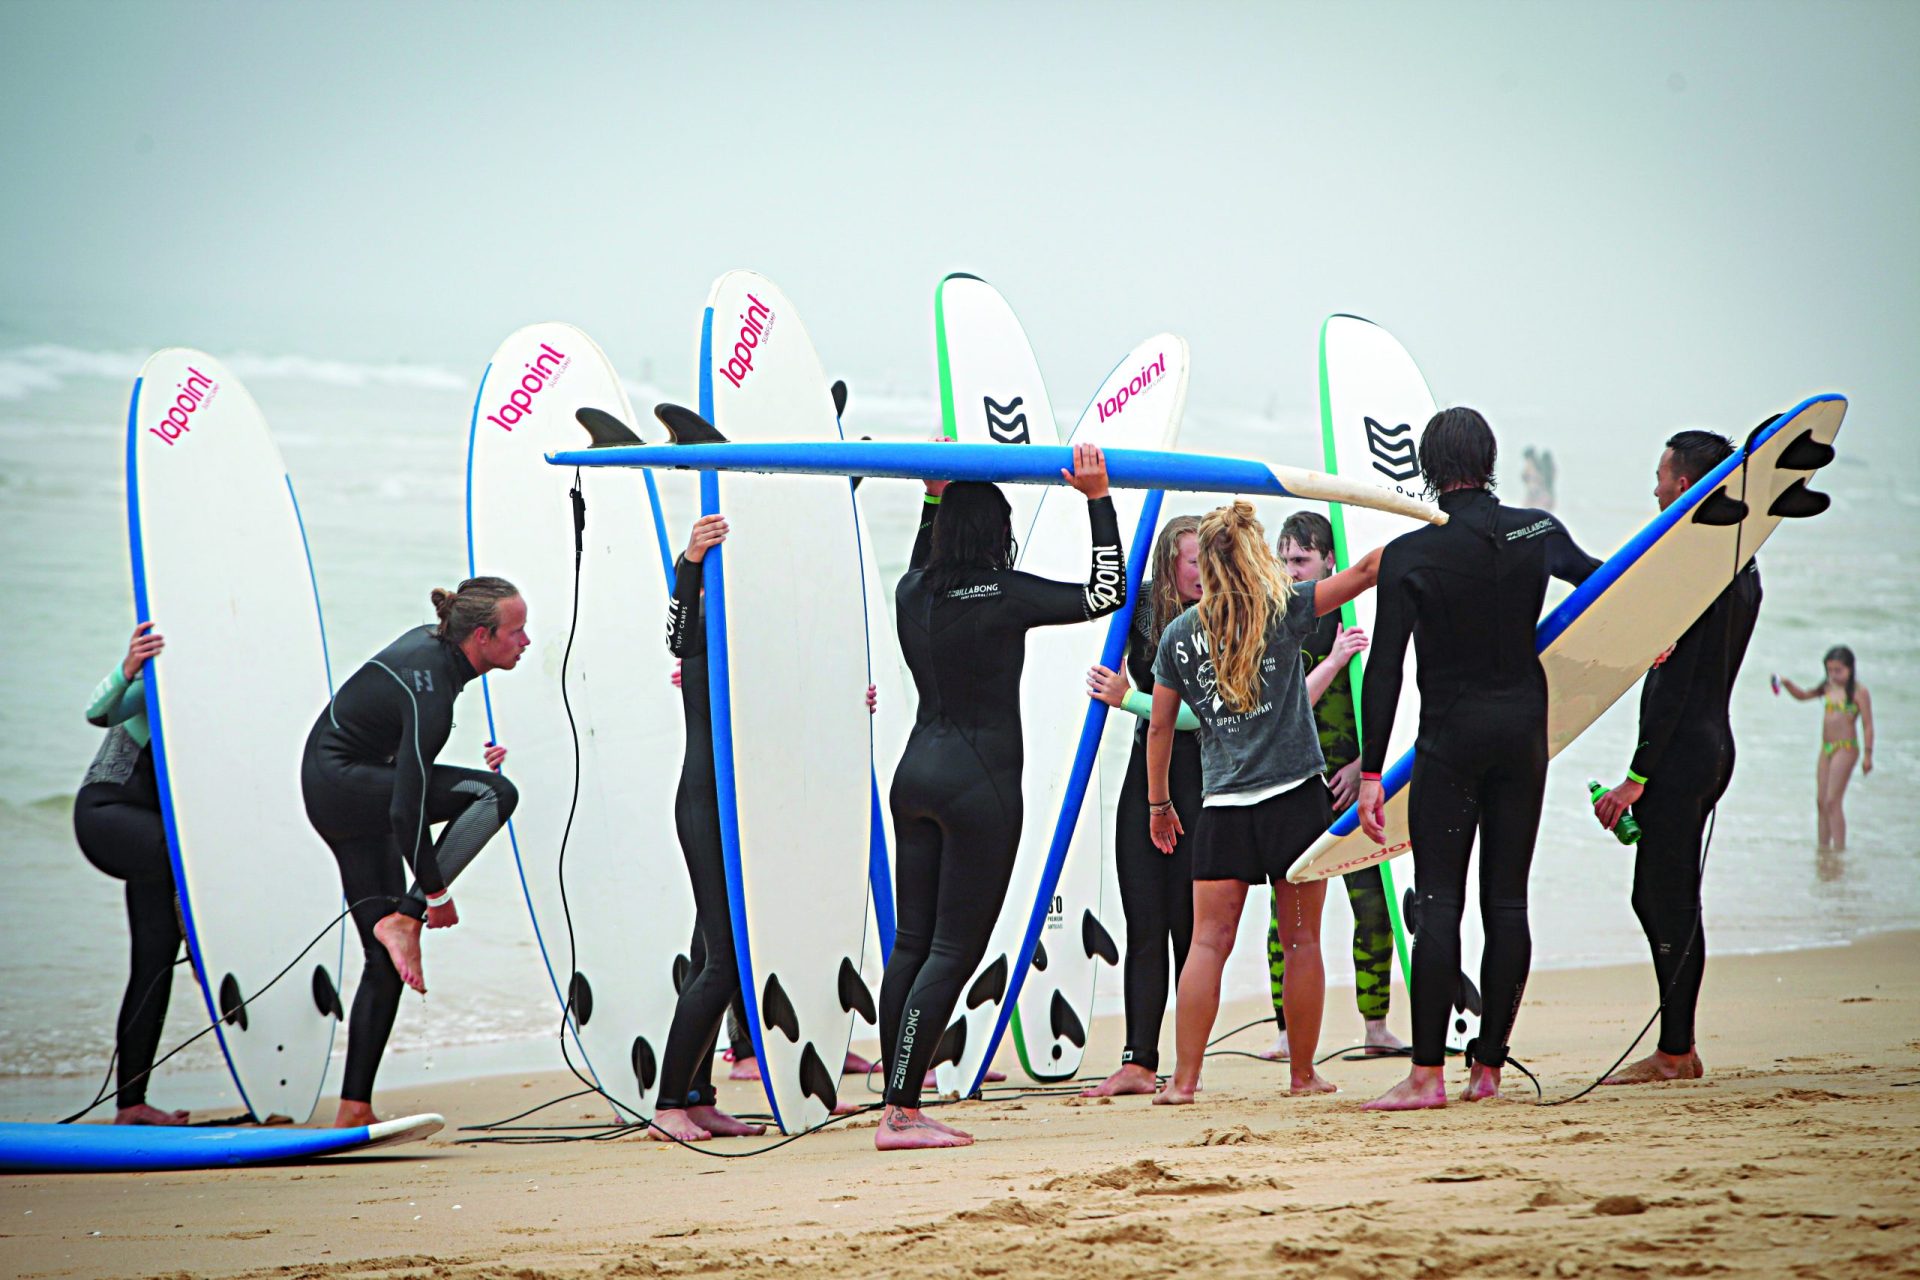 Guinness oficializa recorde da maior aula de surf do mundo na Fonte da Telha